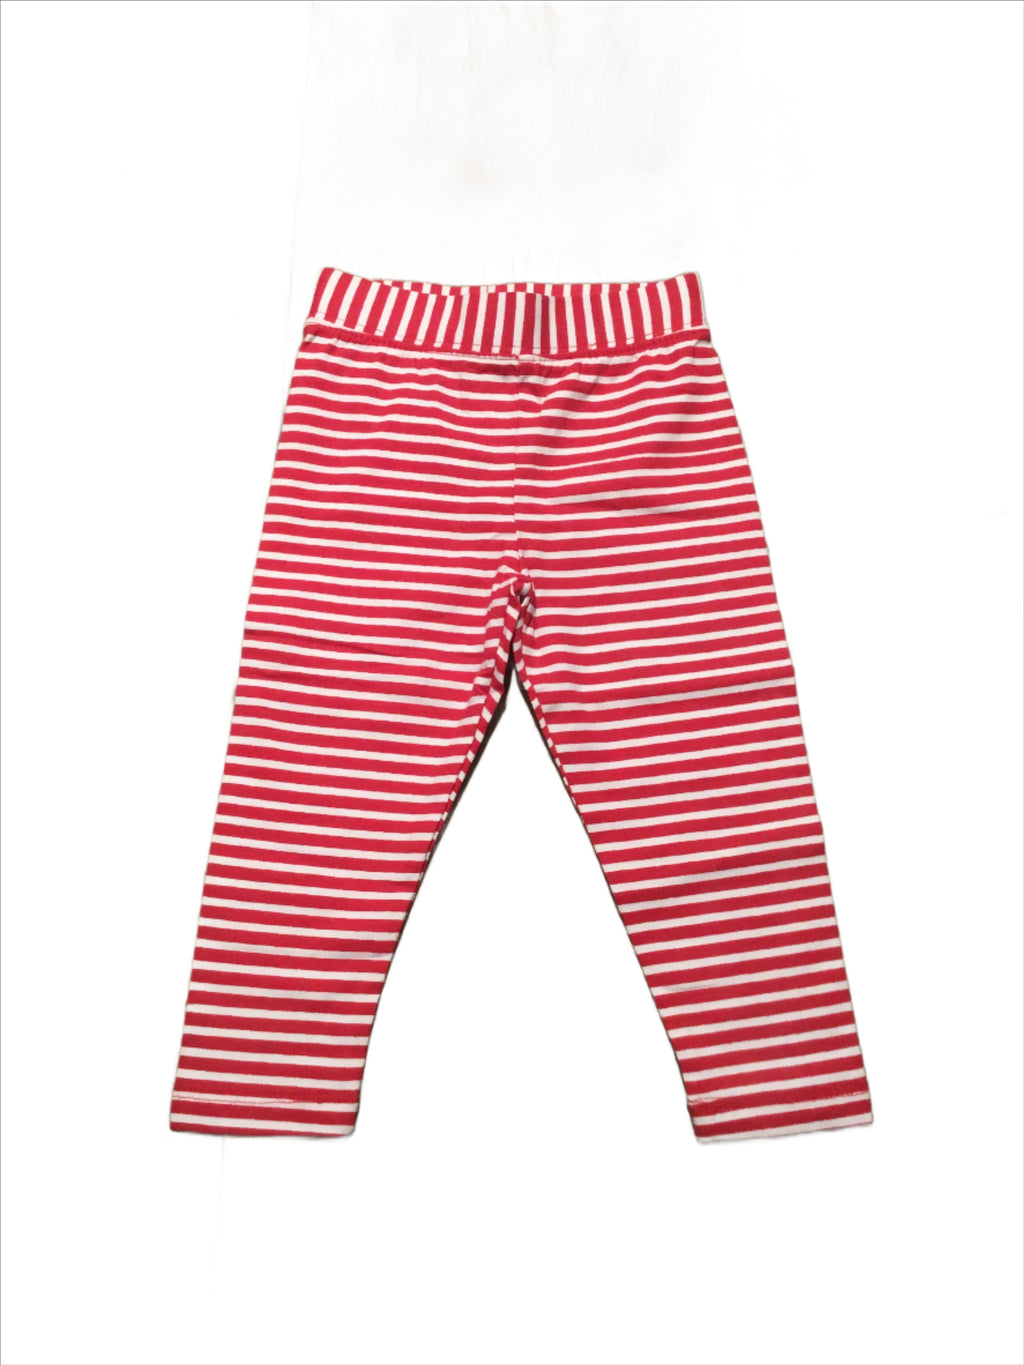 Red & White Striped Leggings